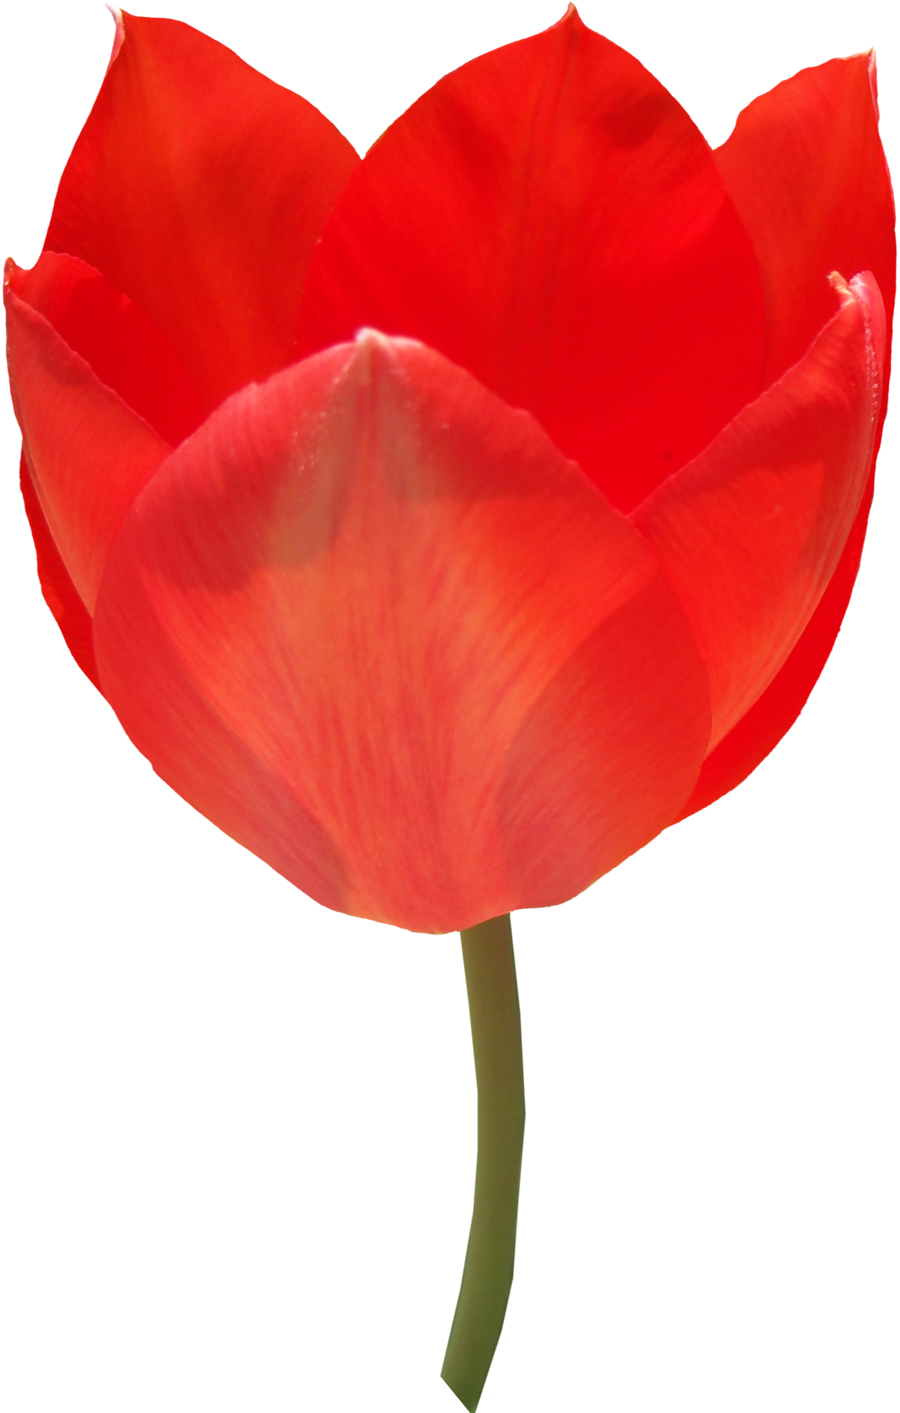 Hoa tulip đỏ